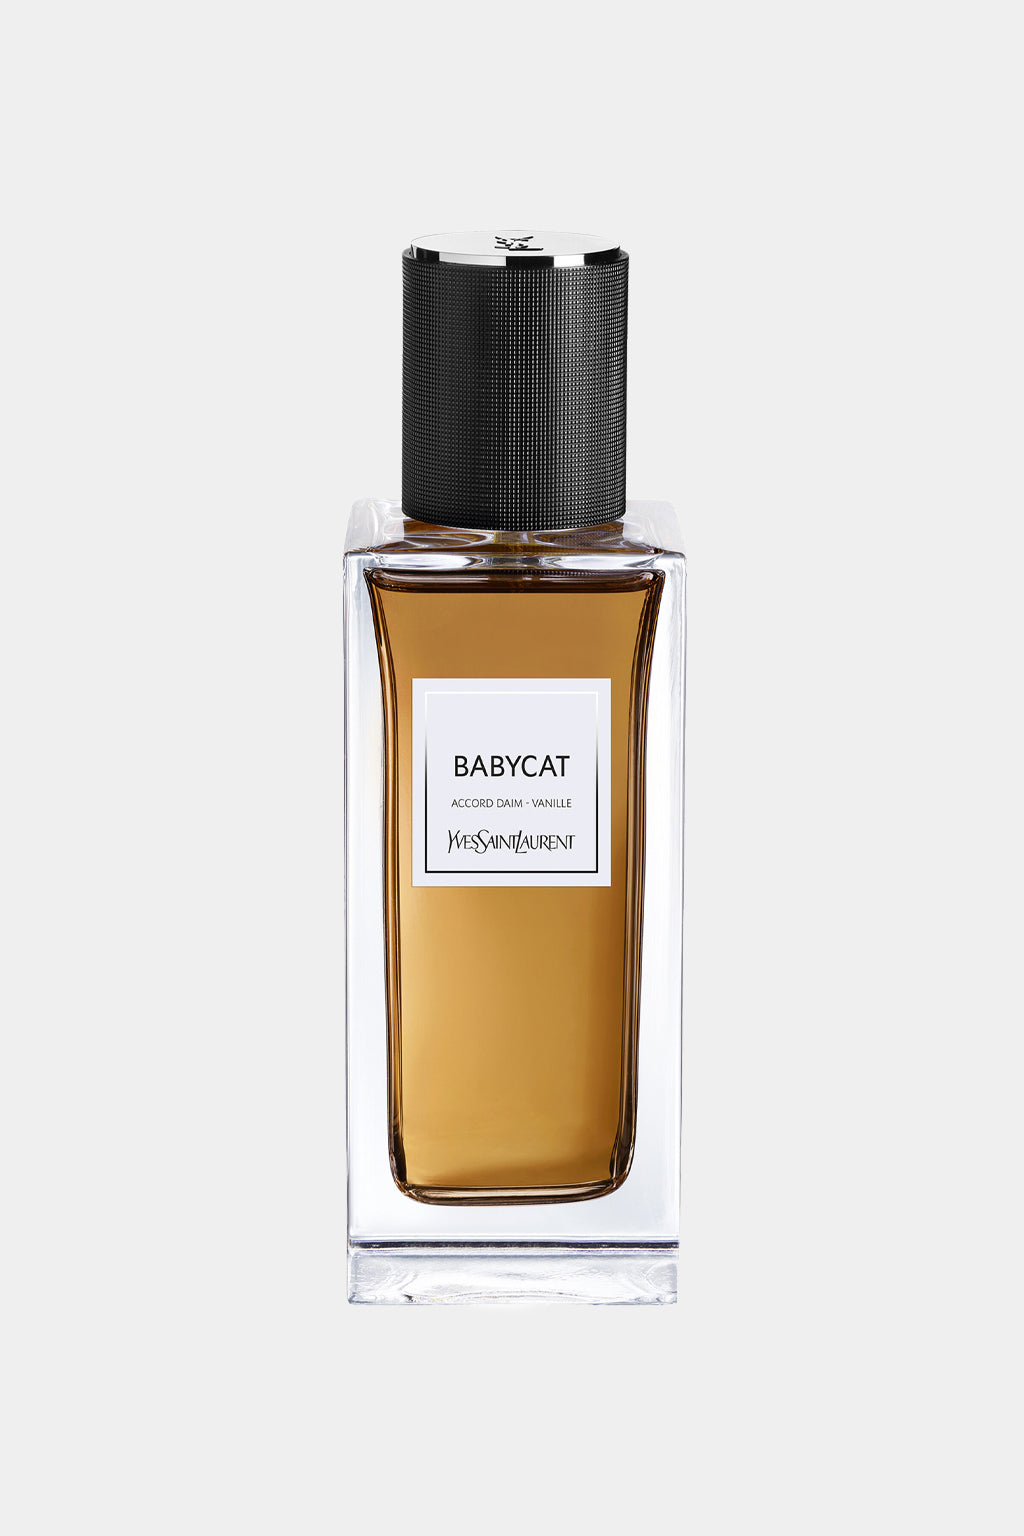 Yves Saint Laurent - Babycat Eau de Parfum